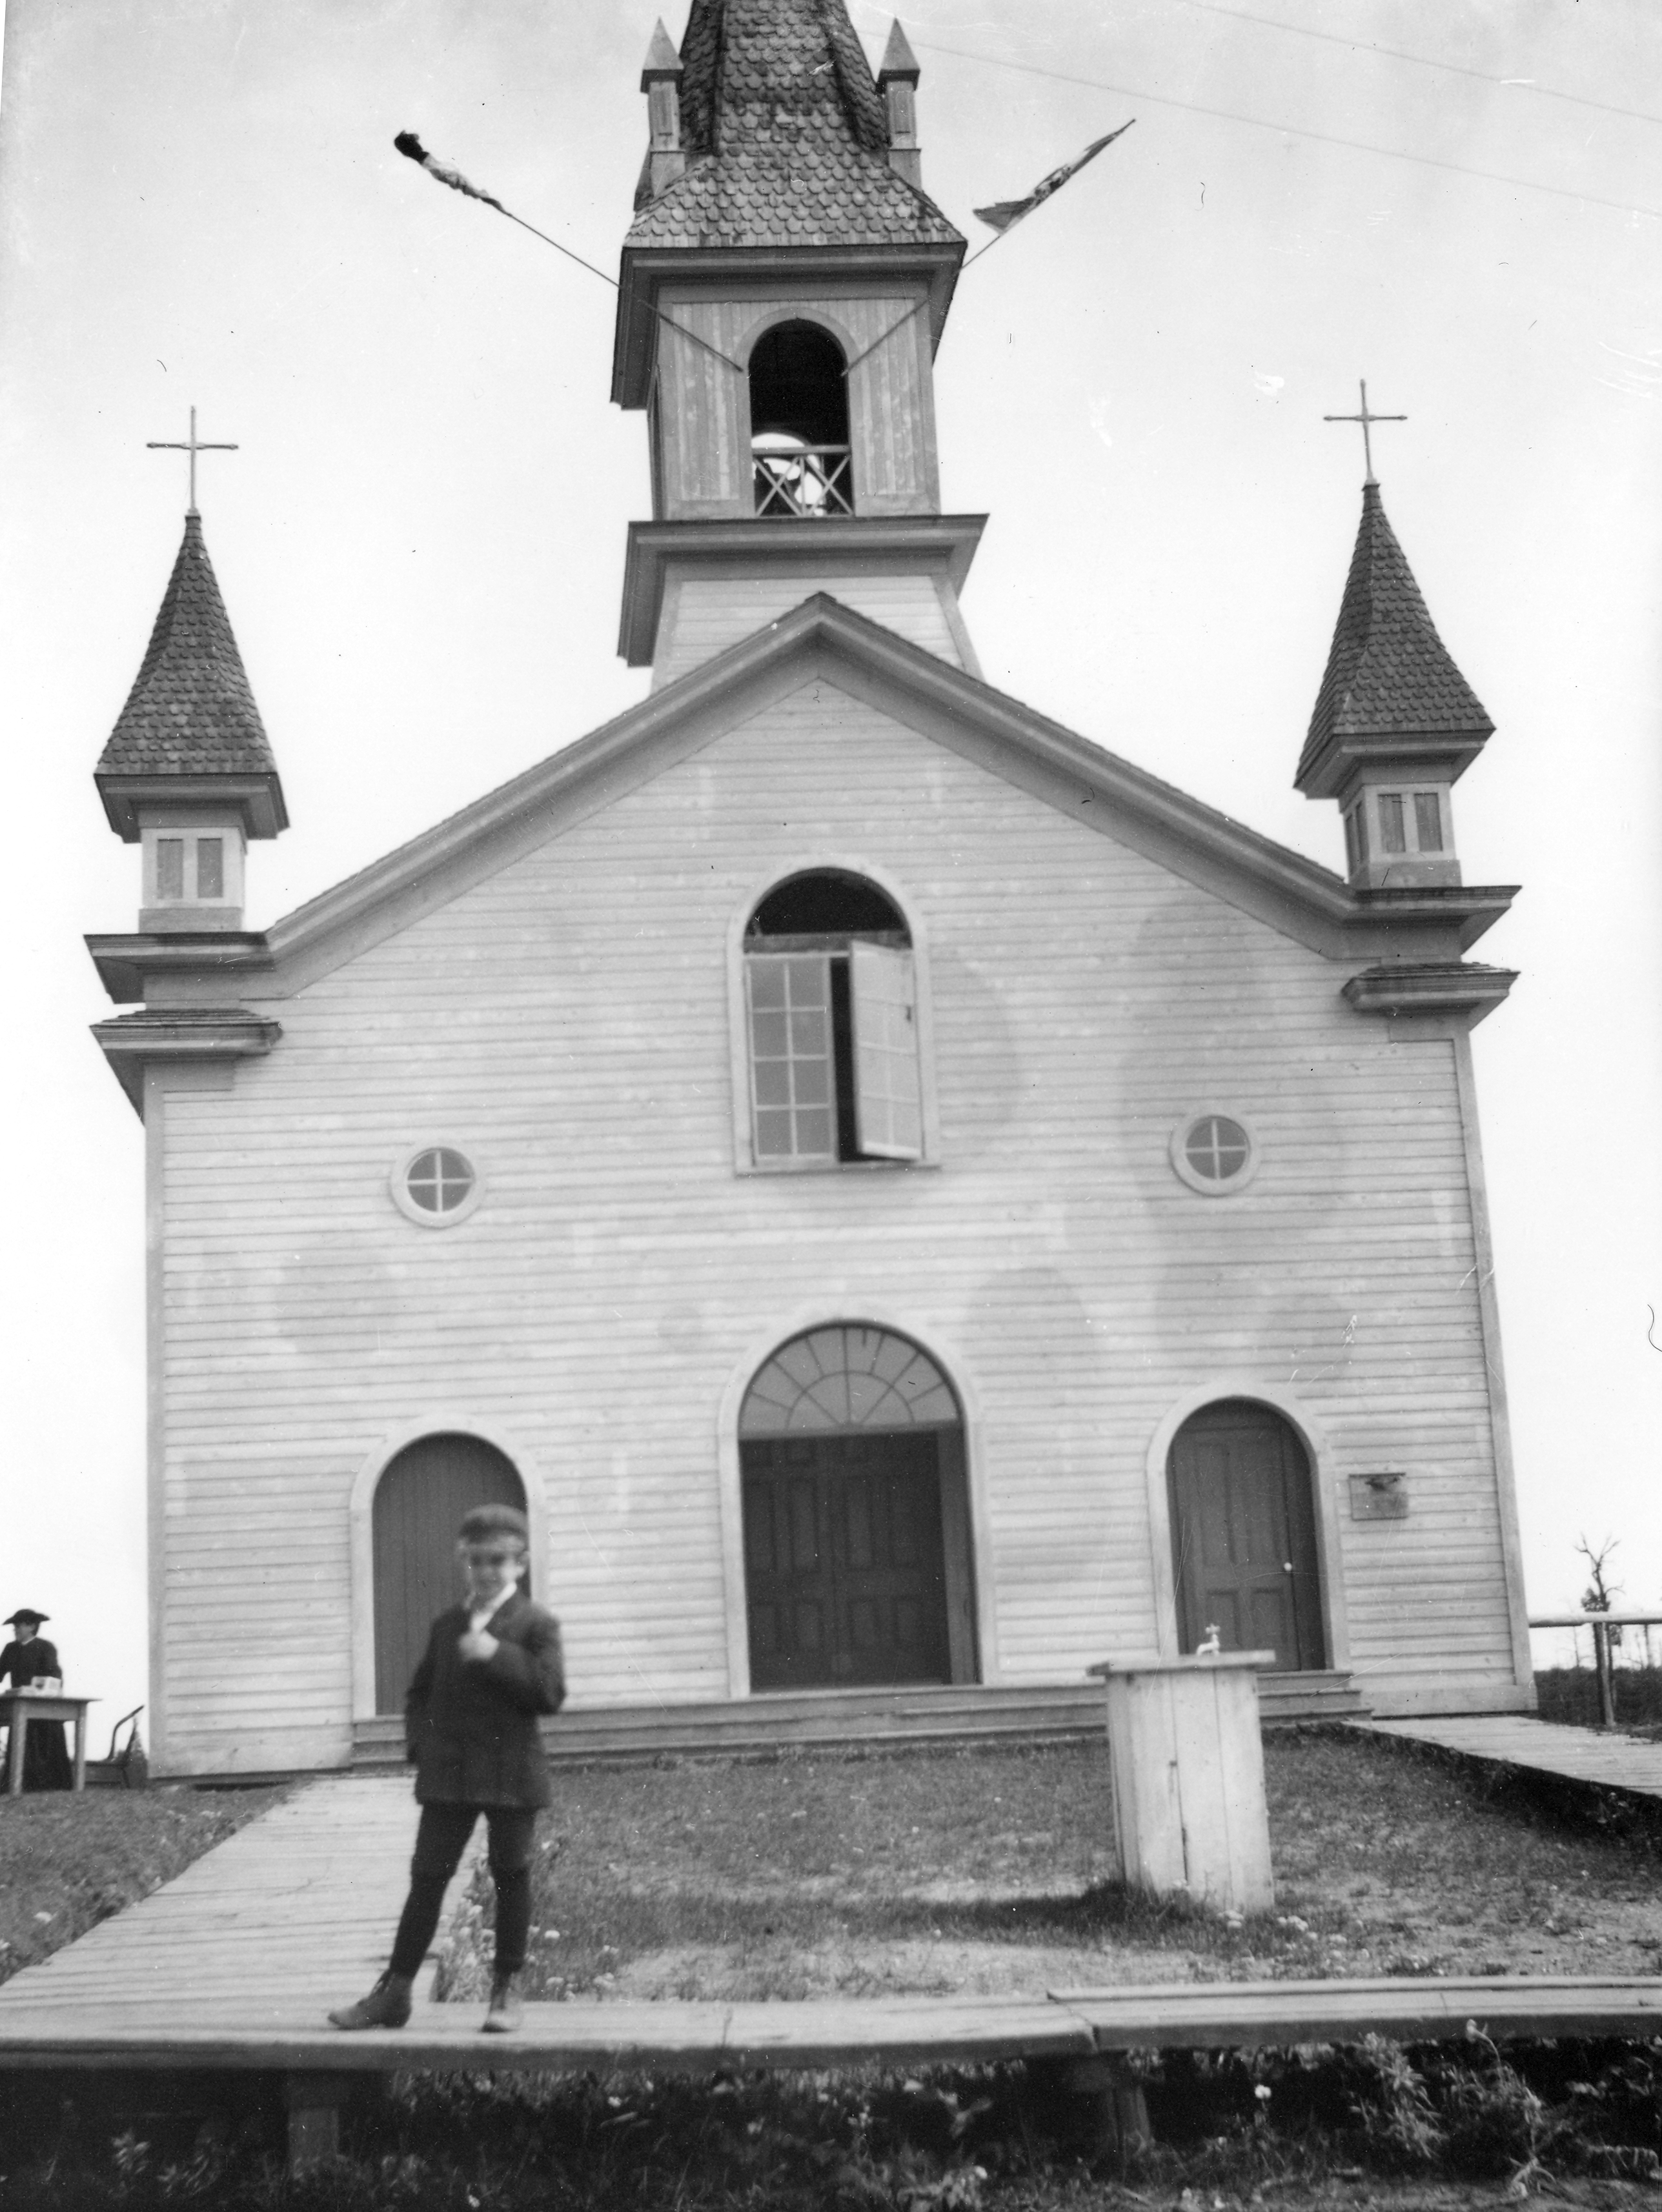 Photographie noir et blanc de la façade d’une petite église. Le bâtiment, dont le revêtement est en planches de bois, a trois portes, trois fenêtres au-dessus des portes et un clocher. Un jeune garçon se tient debout devant l’église sur le trottoir de bois.